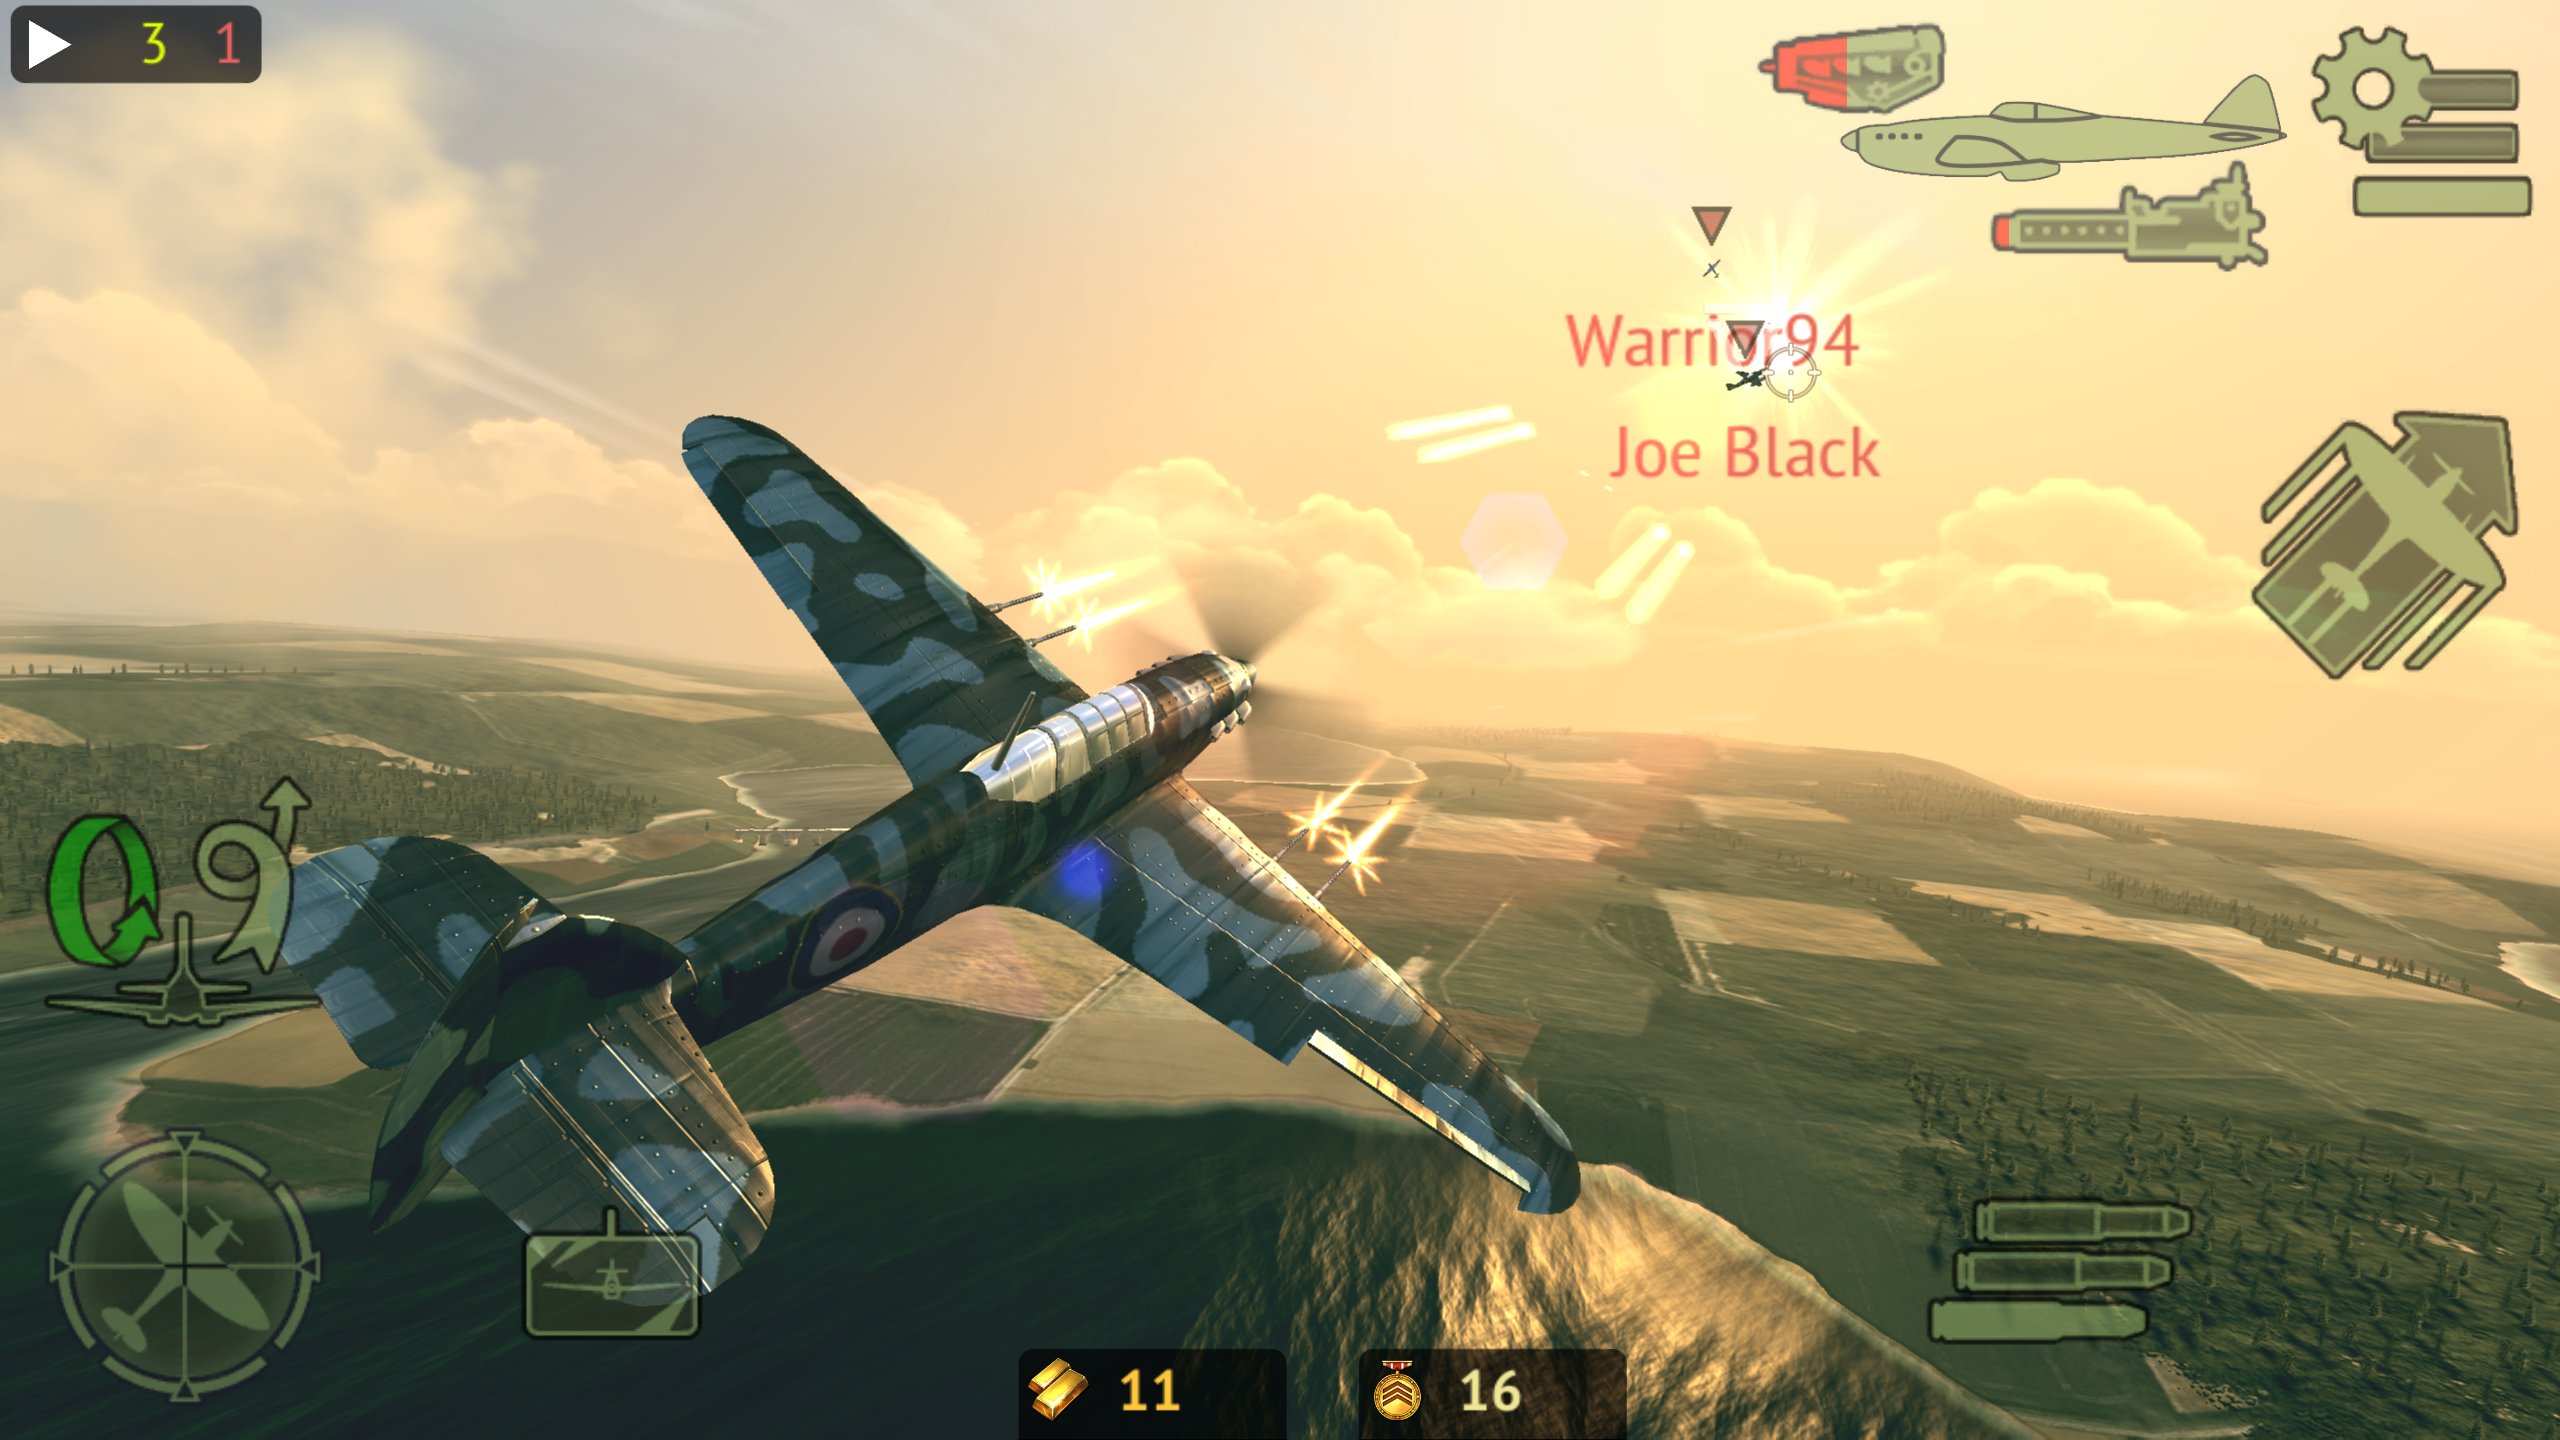 Screenshot 1 of Warplanes: การต่อสู้ออนไลน์ 1.6